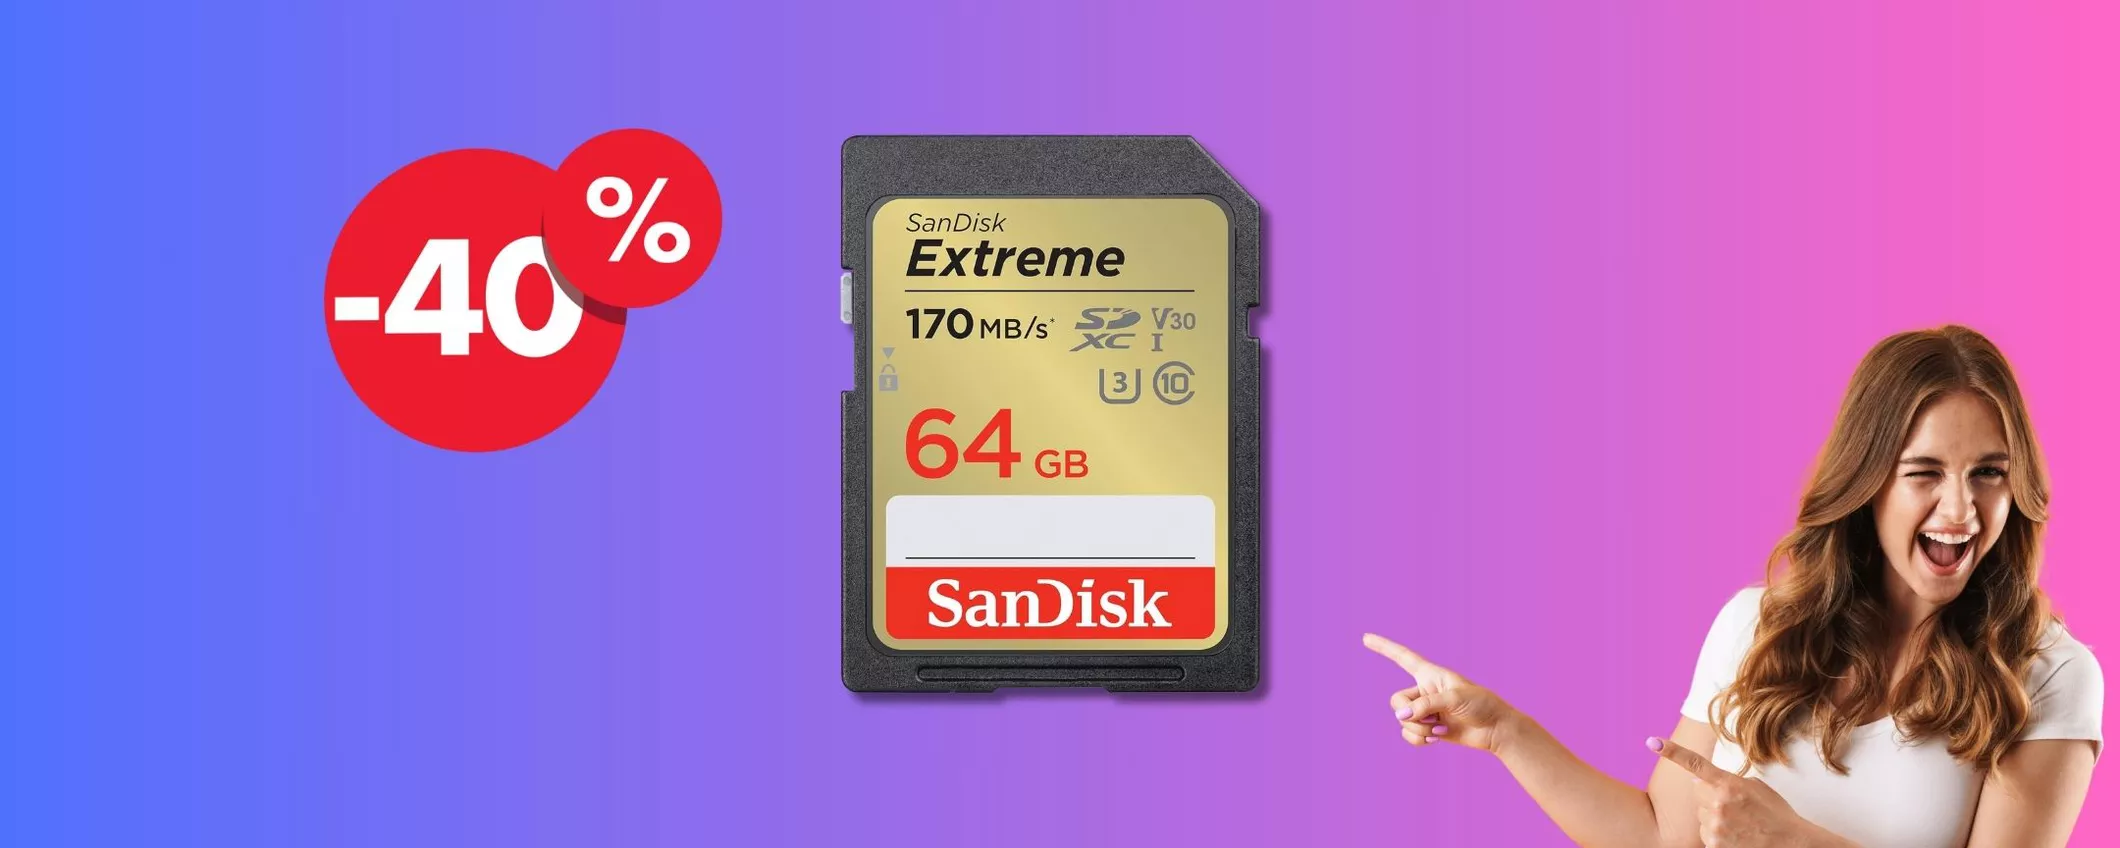 SanDisk SD 64 GB con Rescue Pro: FOLLE SCONTO oggi su Amazon!